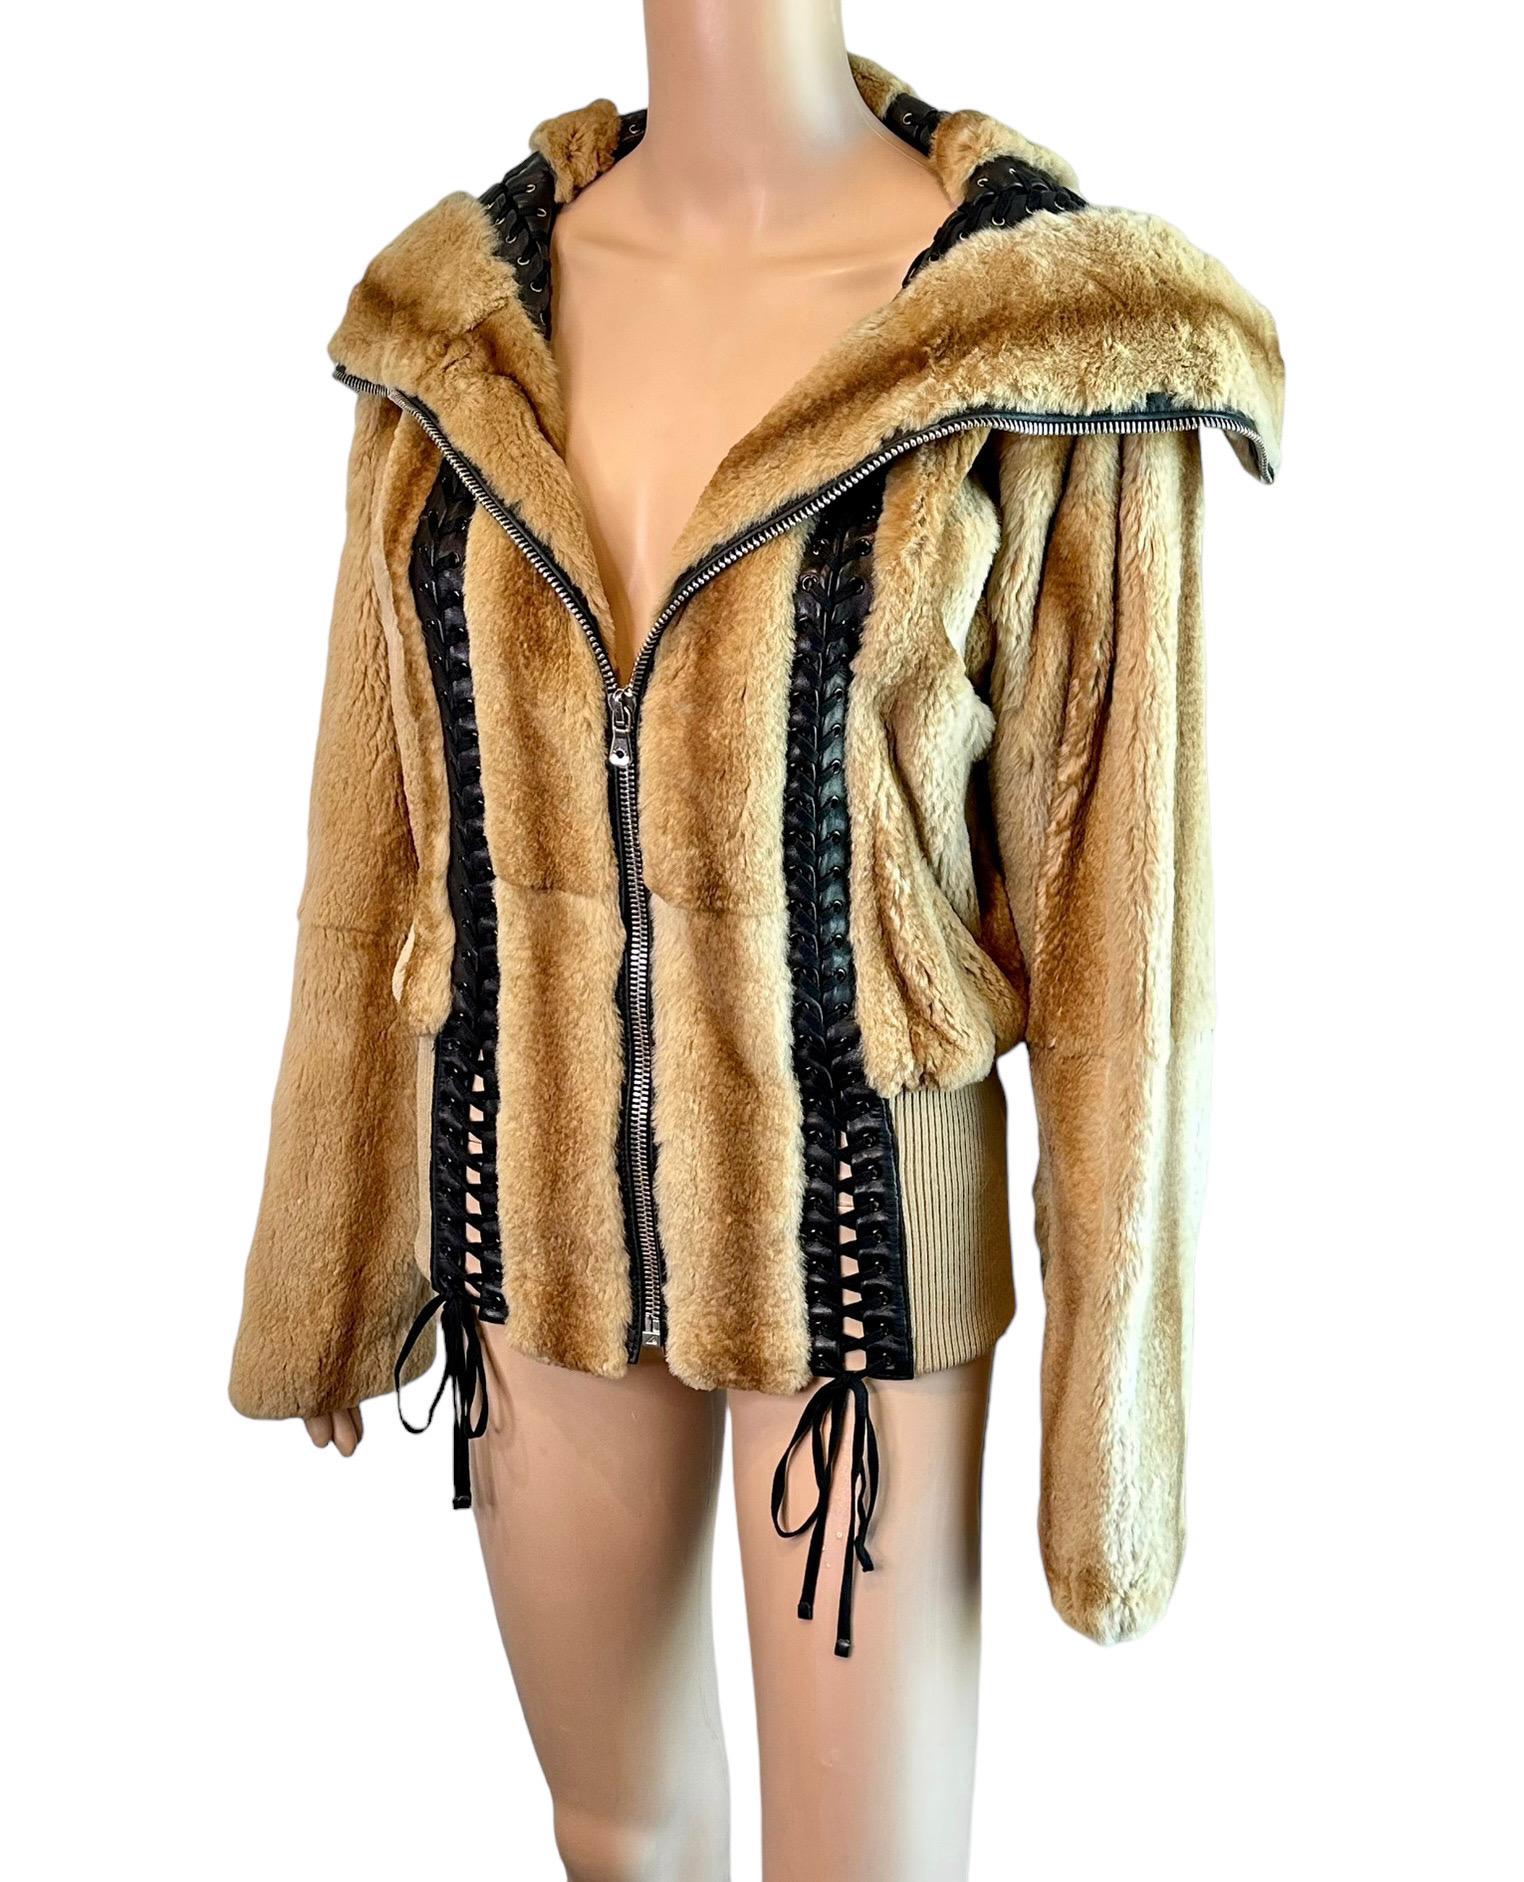 Dolce & Gabbana S/S 2003 Bondage Lace Up Weasel Fur Jacket Coat IT 40

SUIVEZ-NOUS SUR INSTAGRAM @OPULENTADDICT